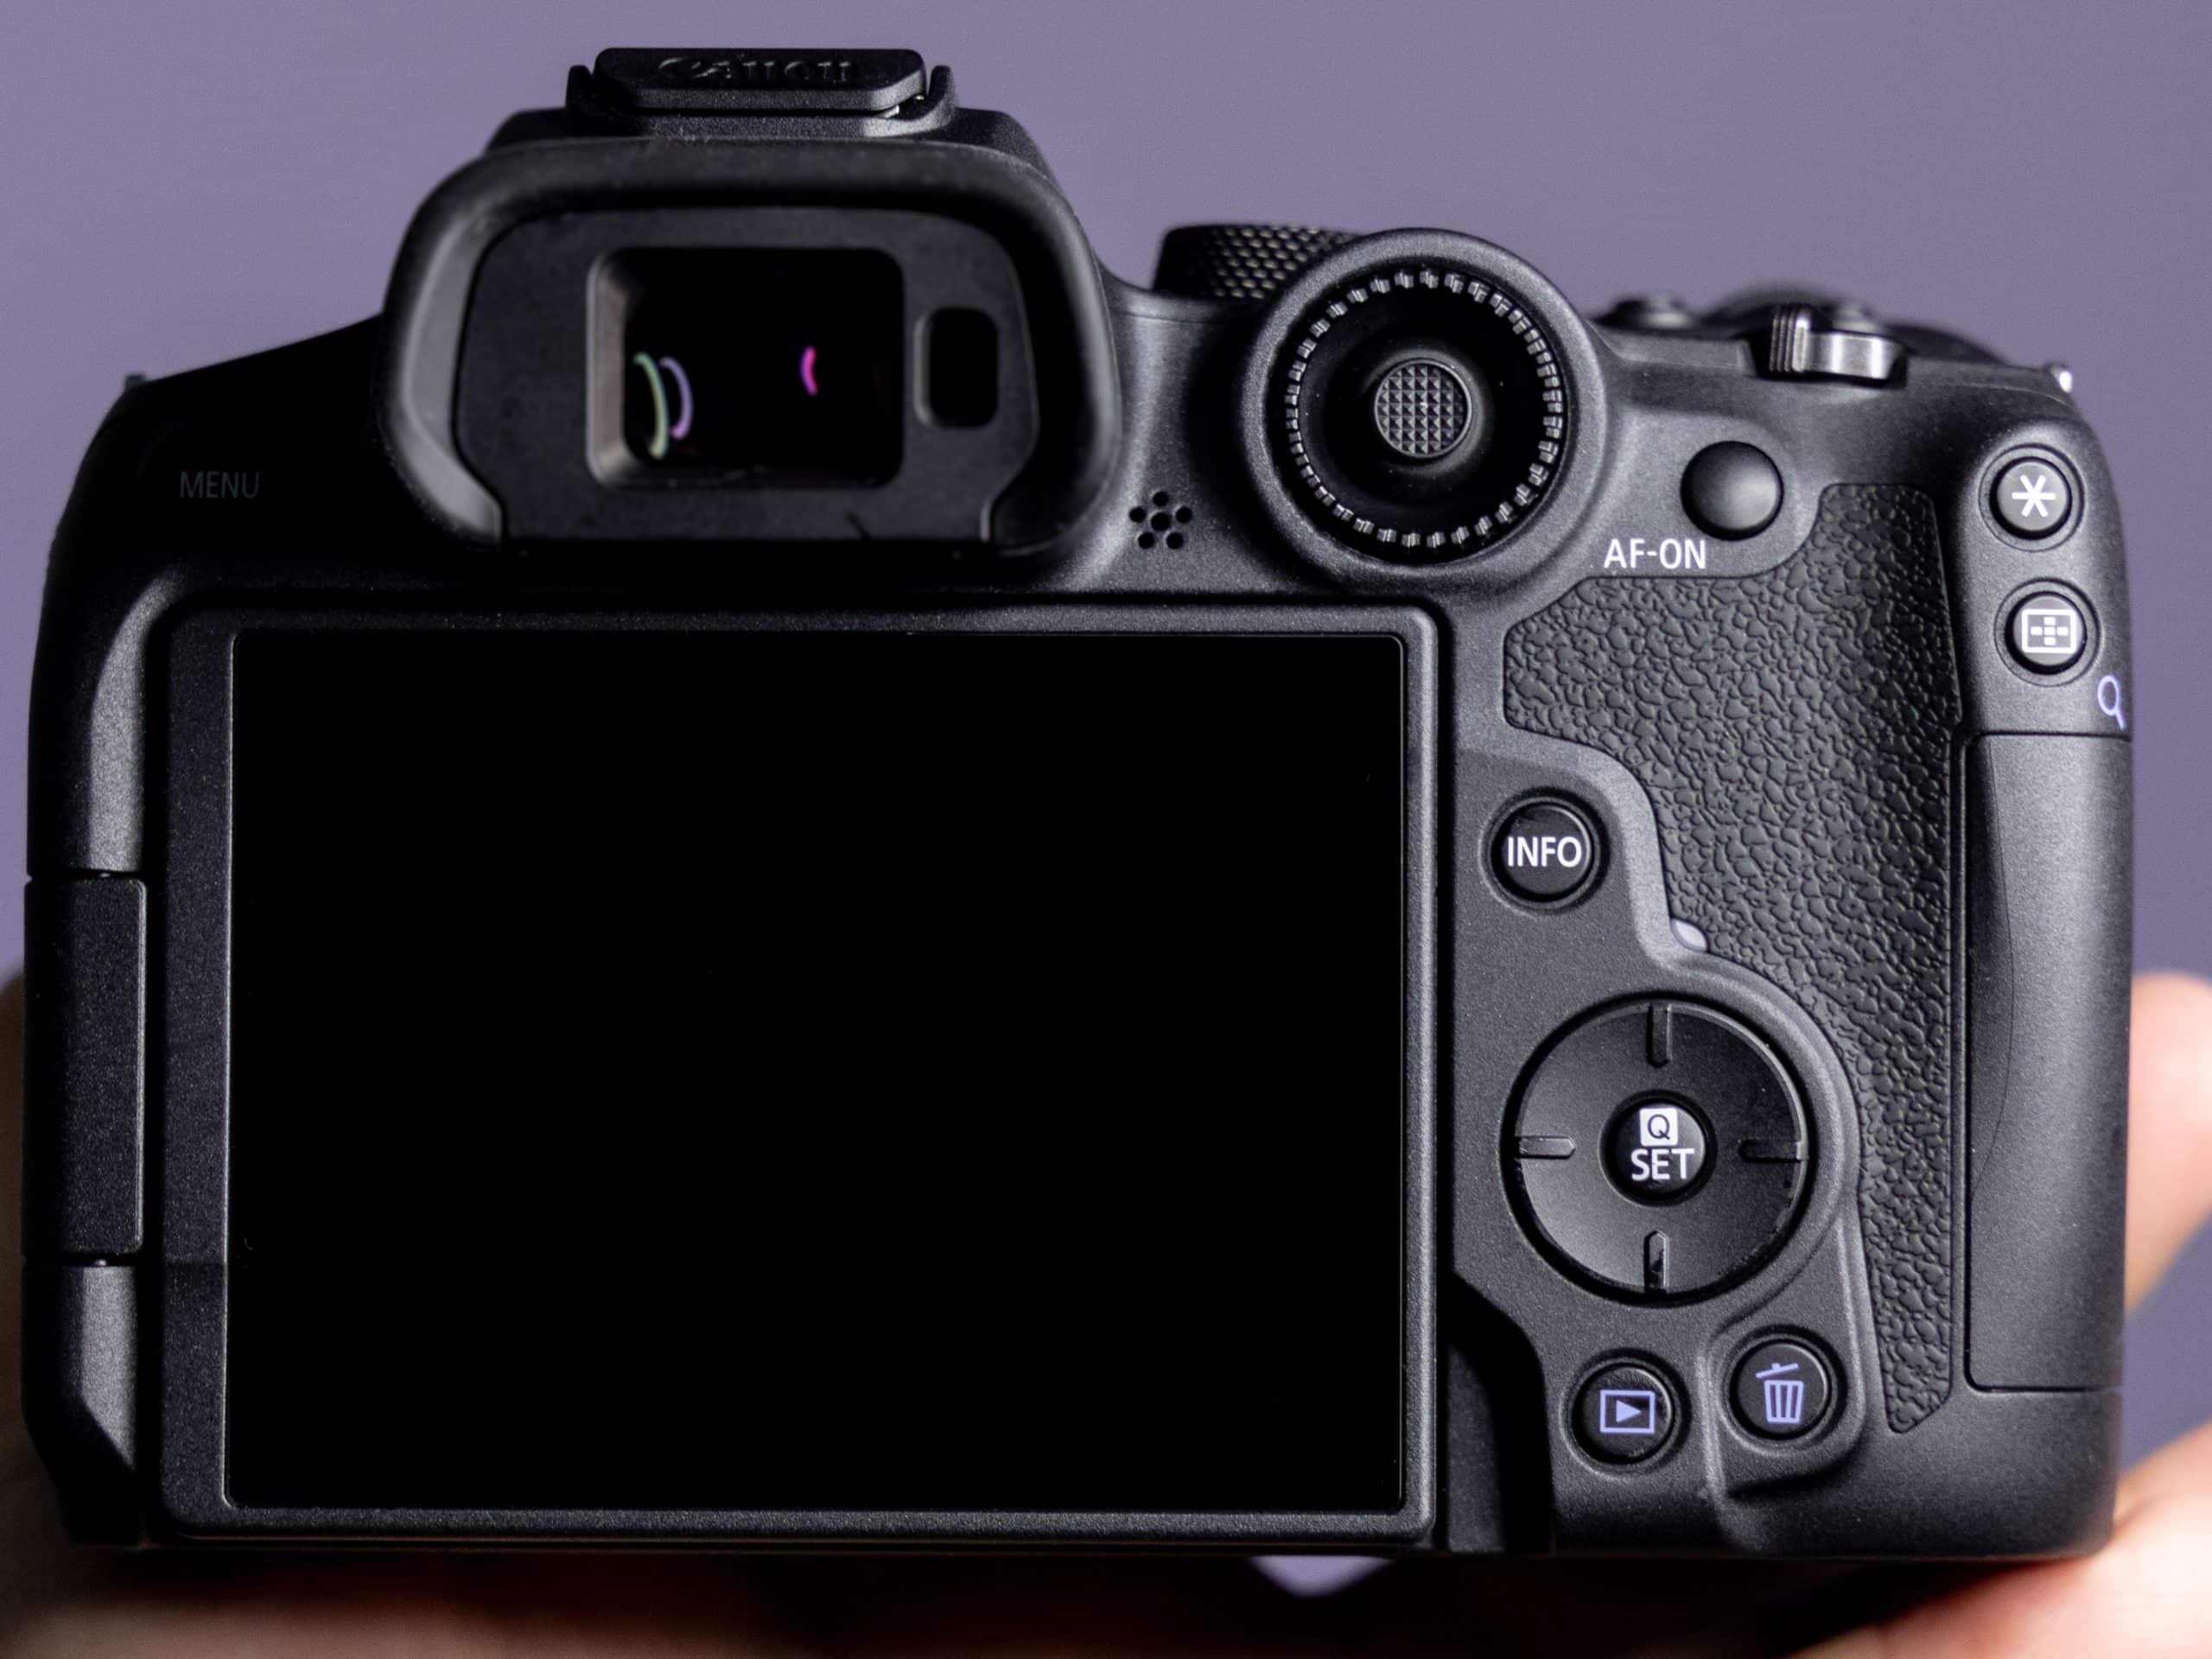 Canon EOS R7 ra mắt với cảm biến 32.5MP mới với IBIS và quay 4K60p